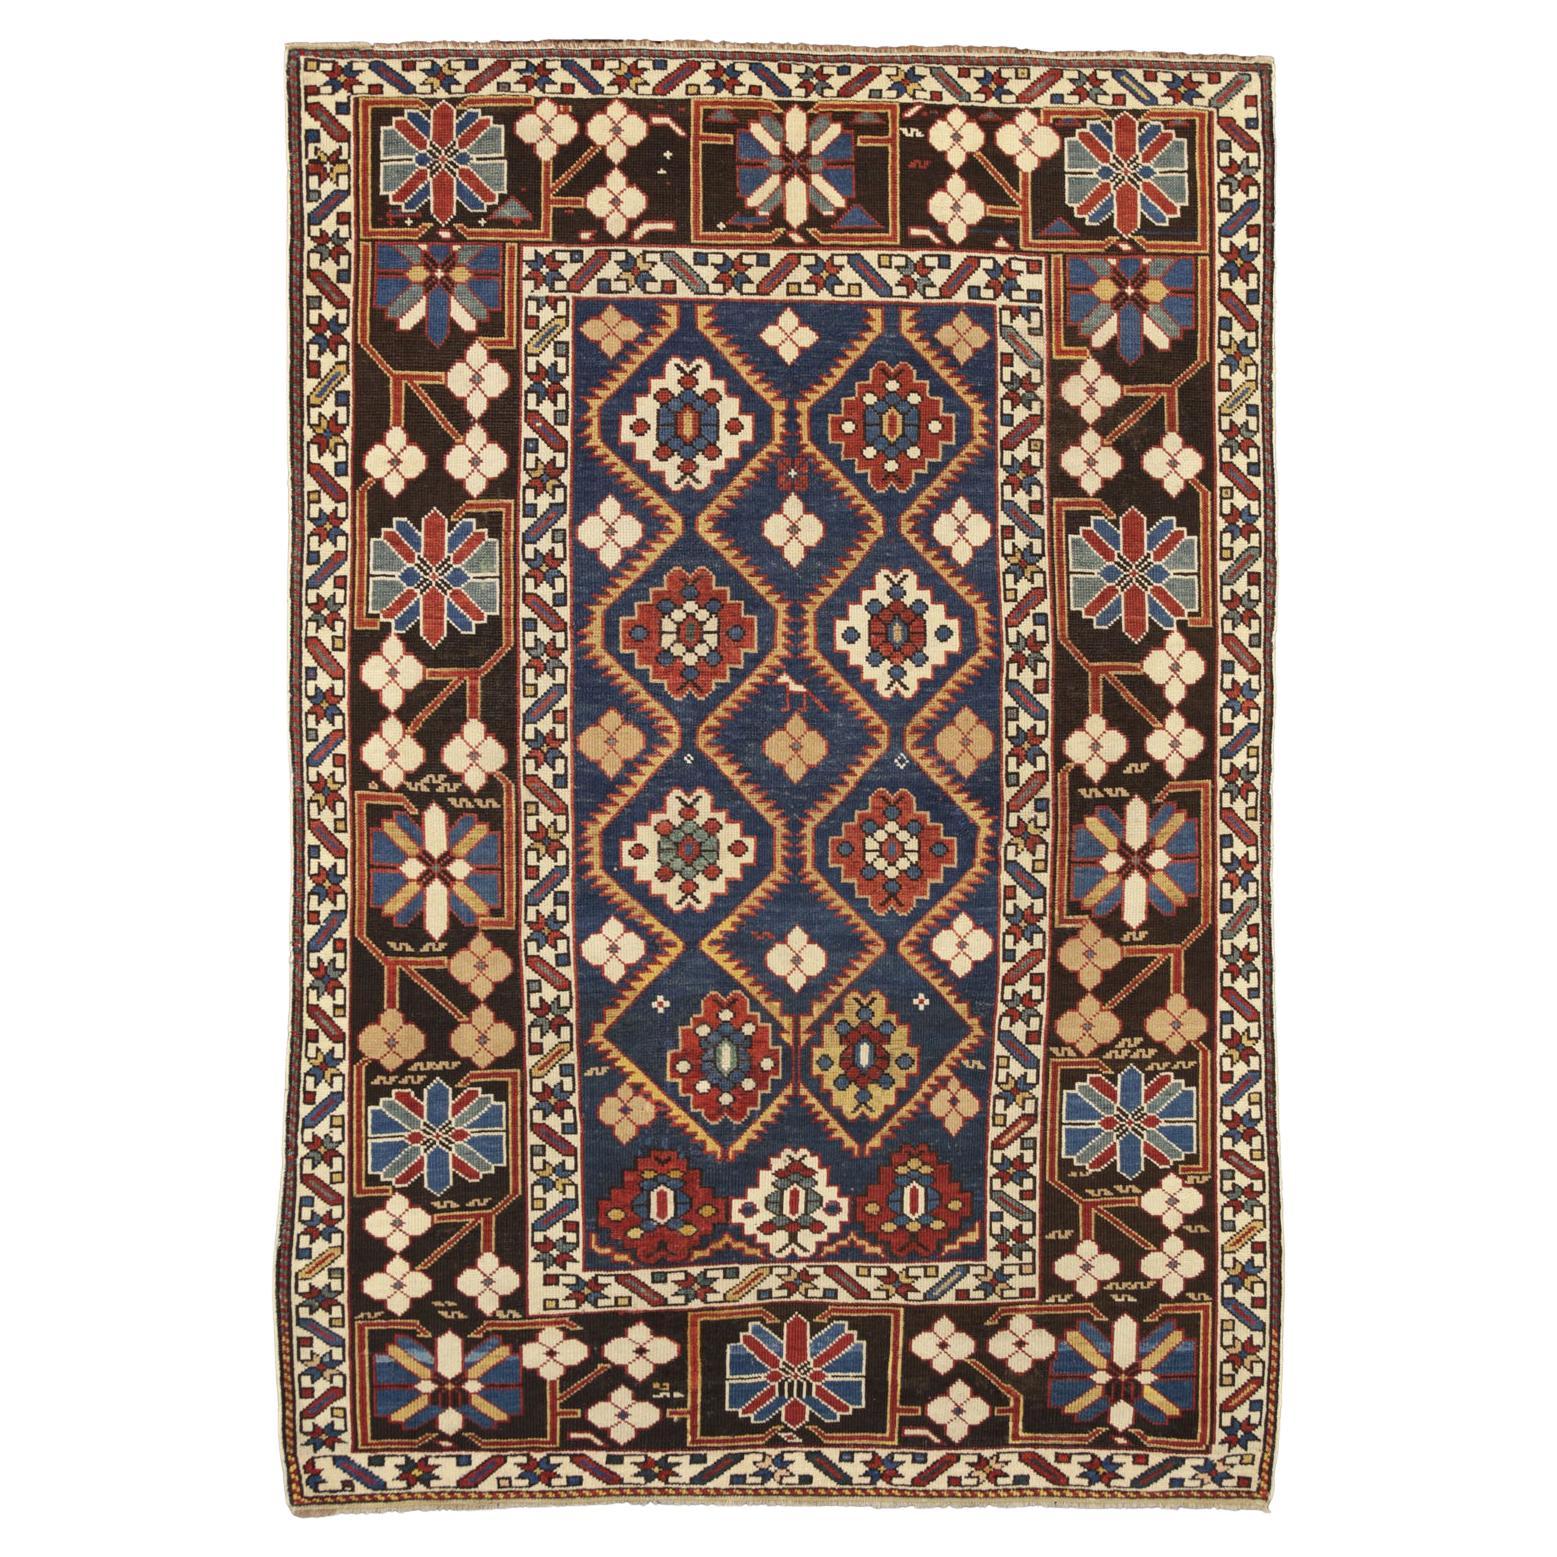 Antique Caucasian Large-Scale Lattice Design Shirvan Wool Rug, 1880-1900 For Sale